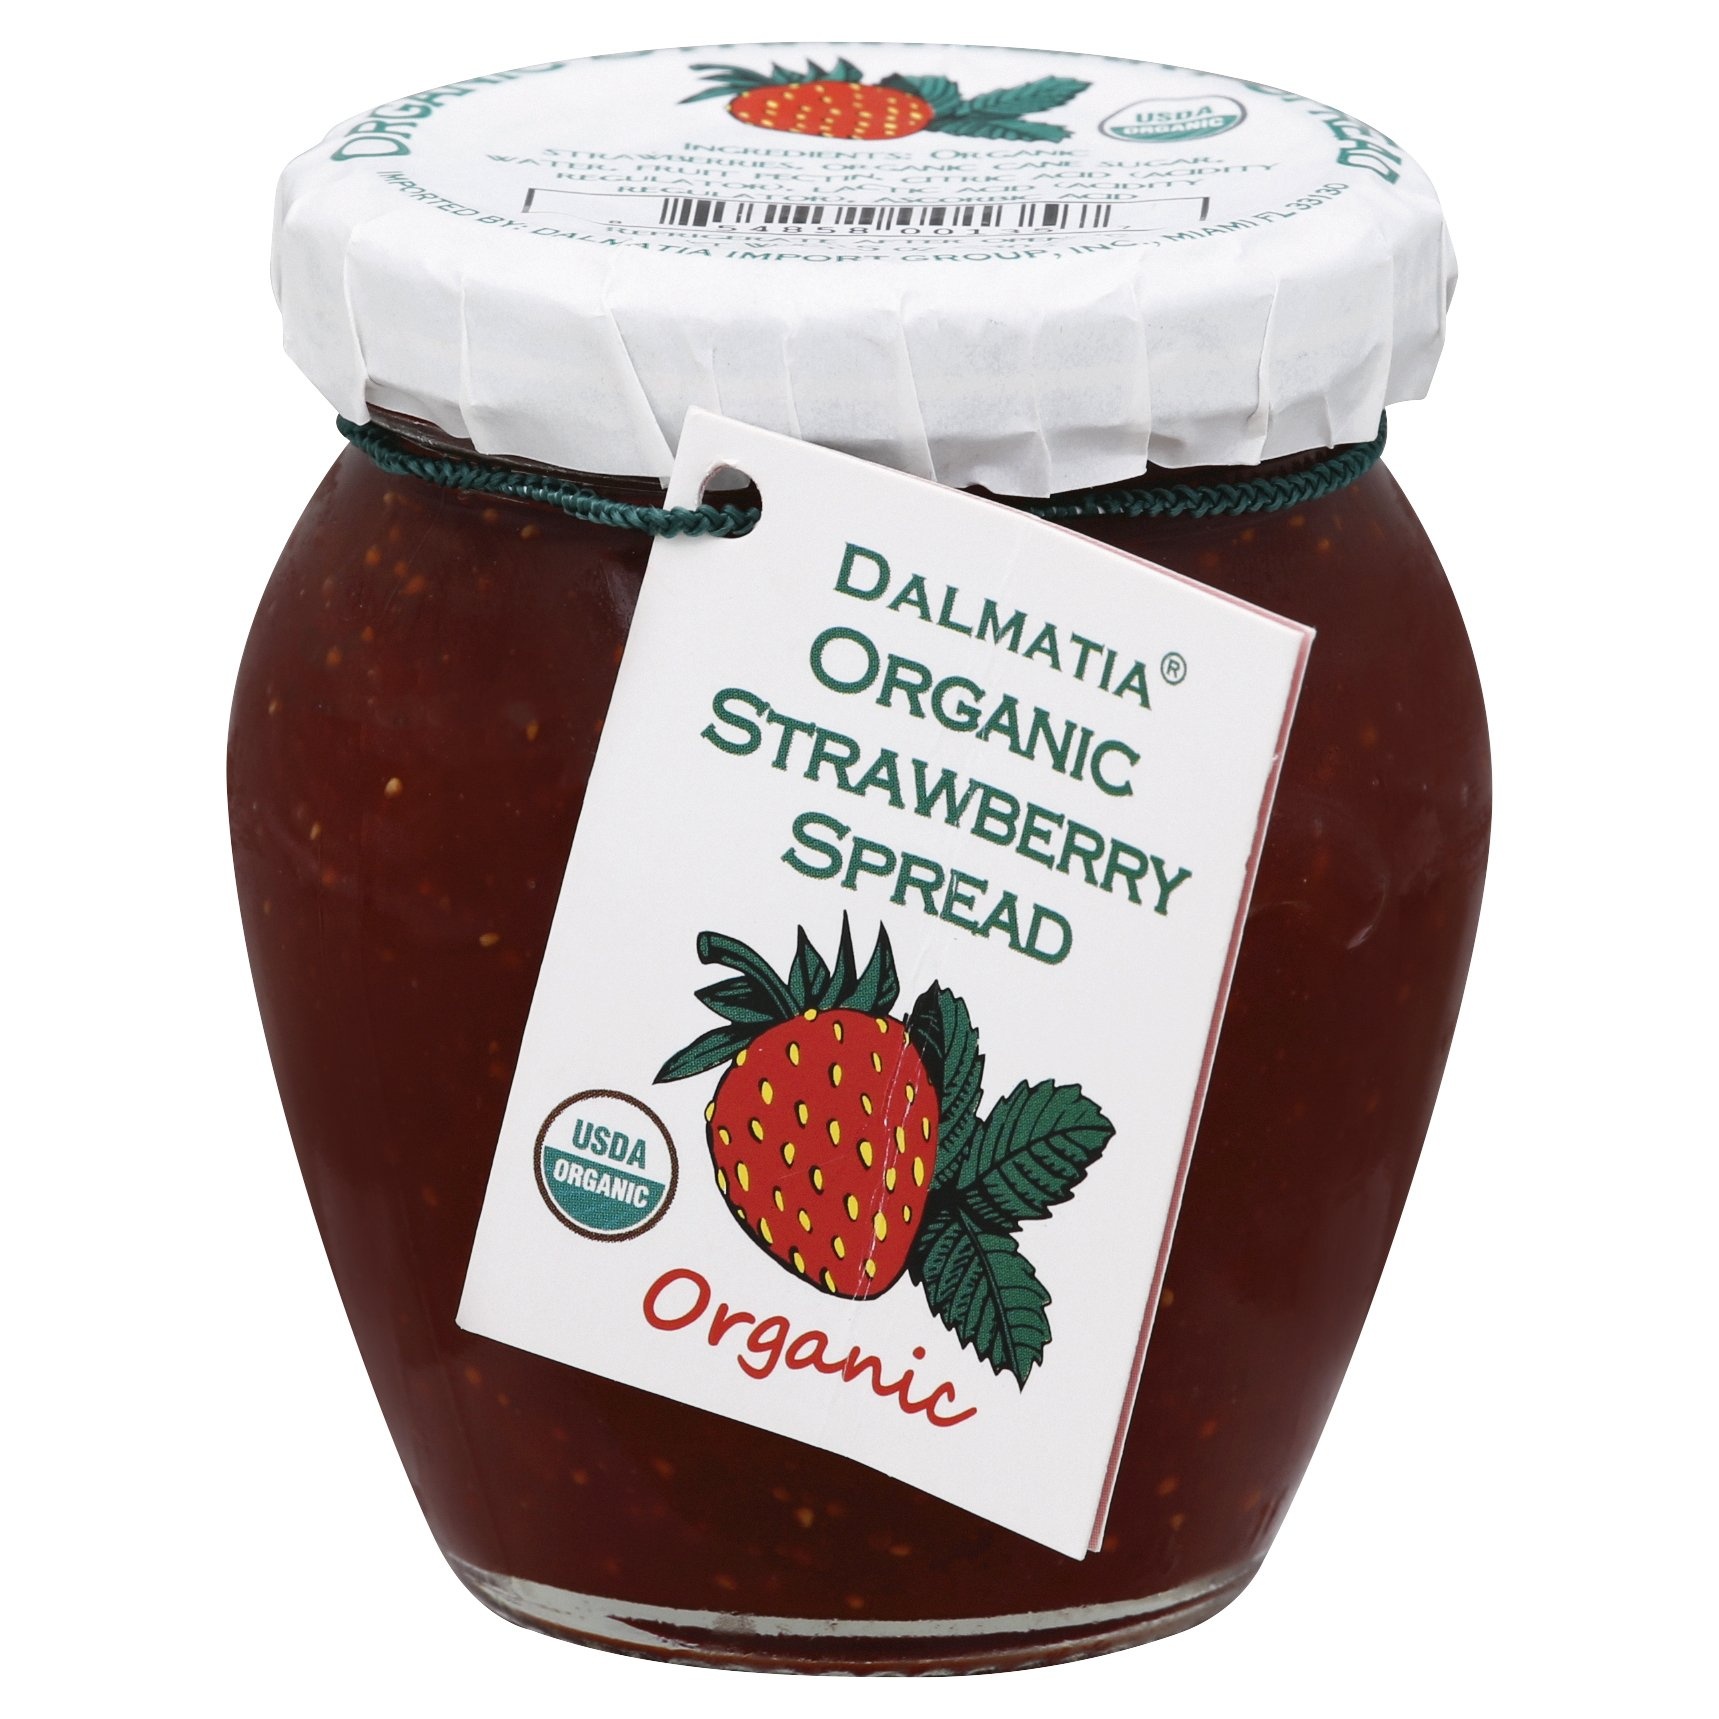 slide 1 of 1, Dalmatia Strawberry Spread Organic, 6.7 oz